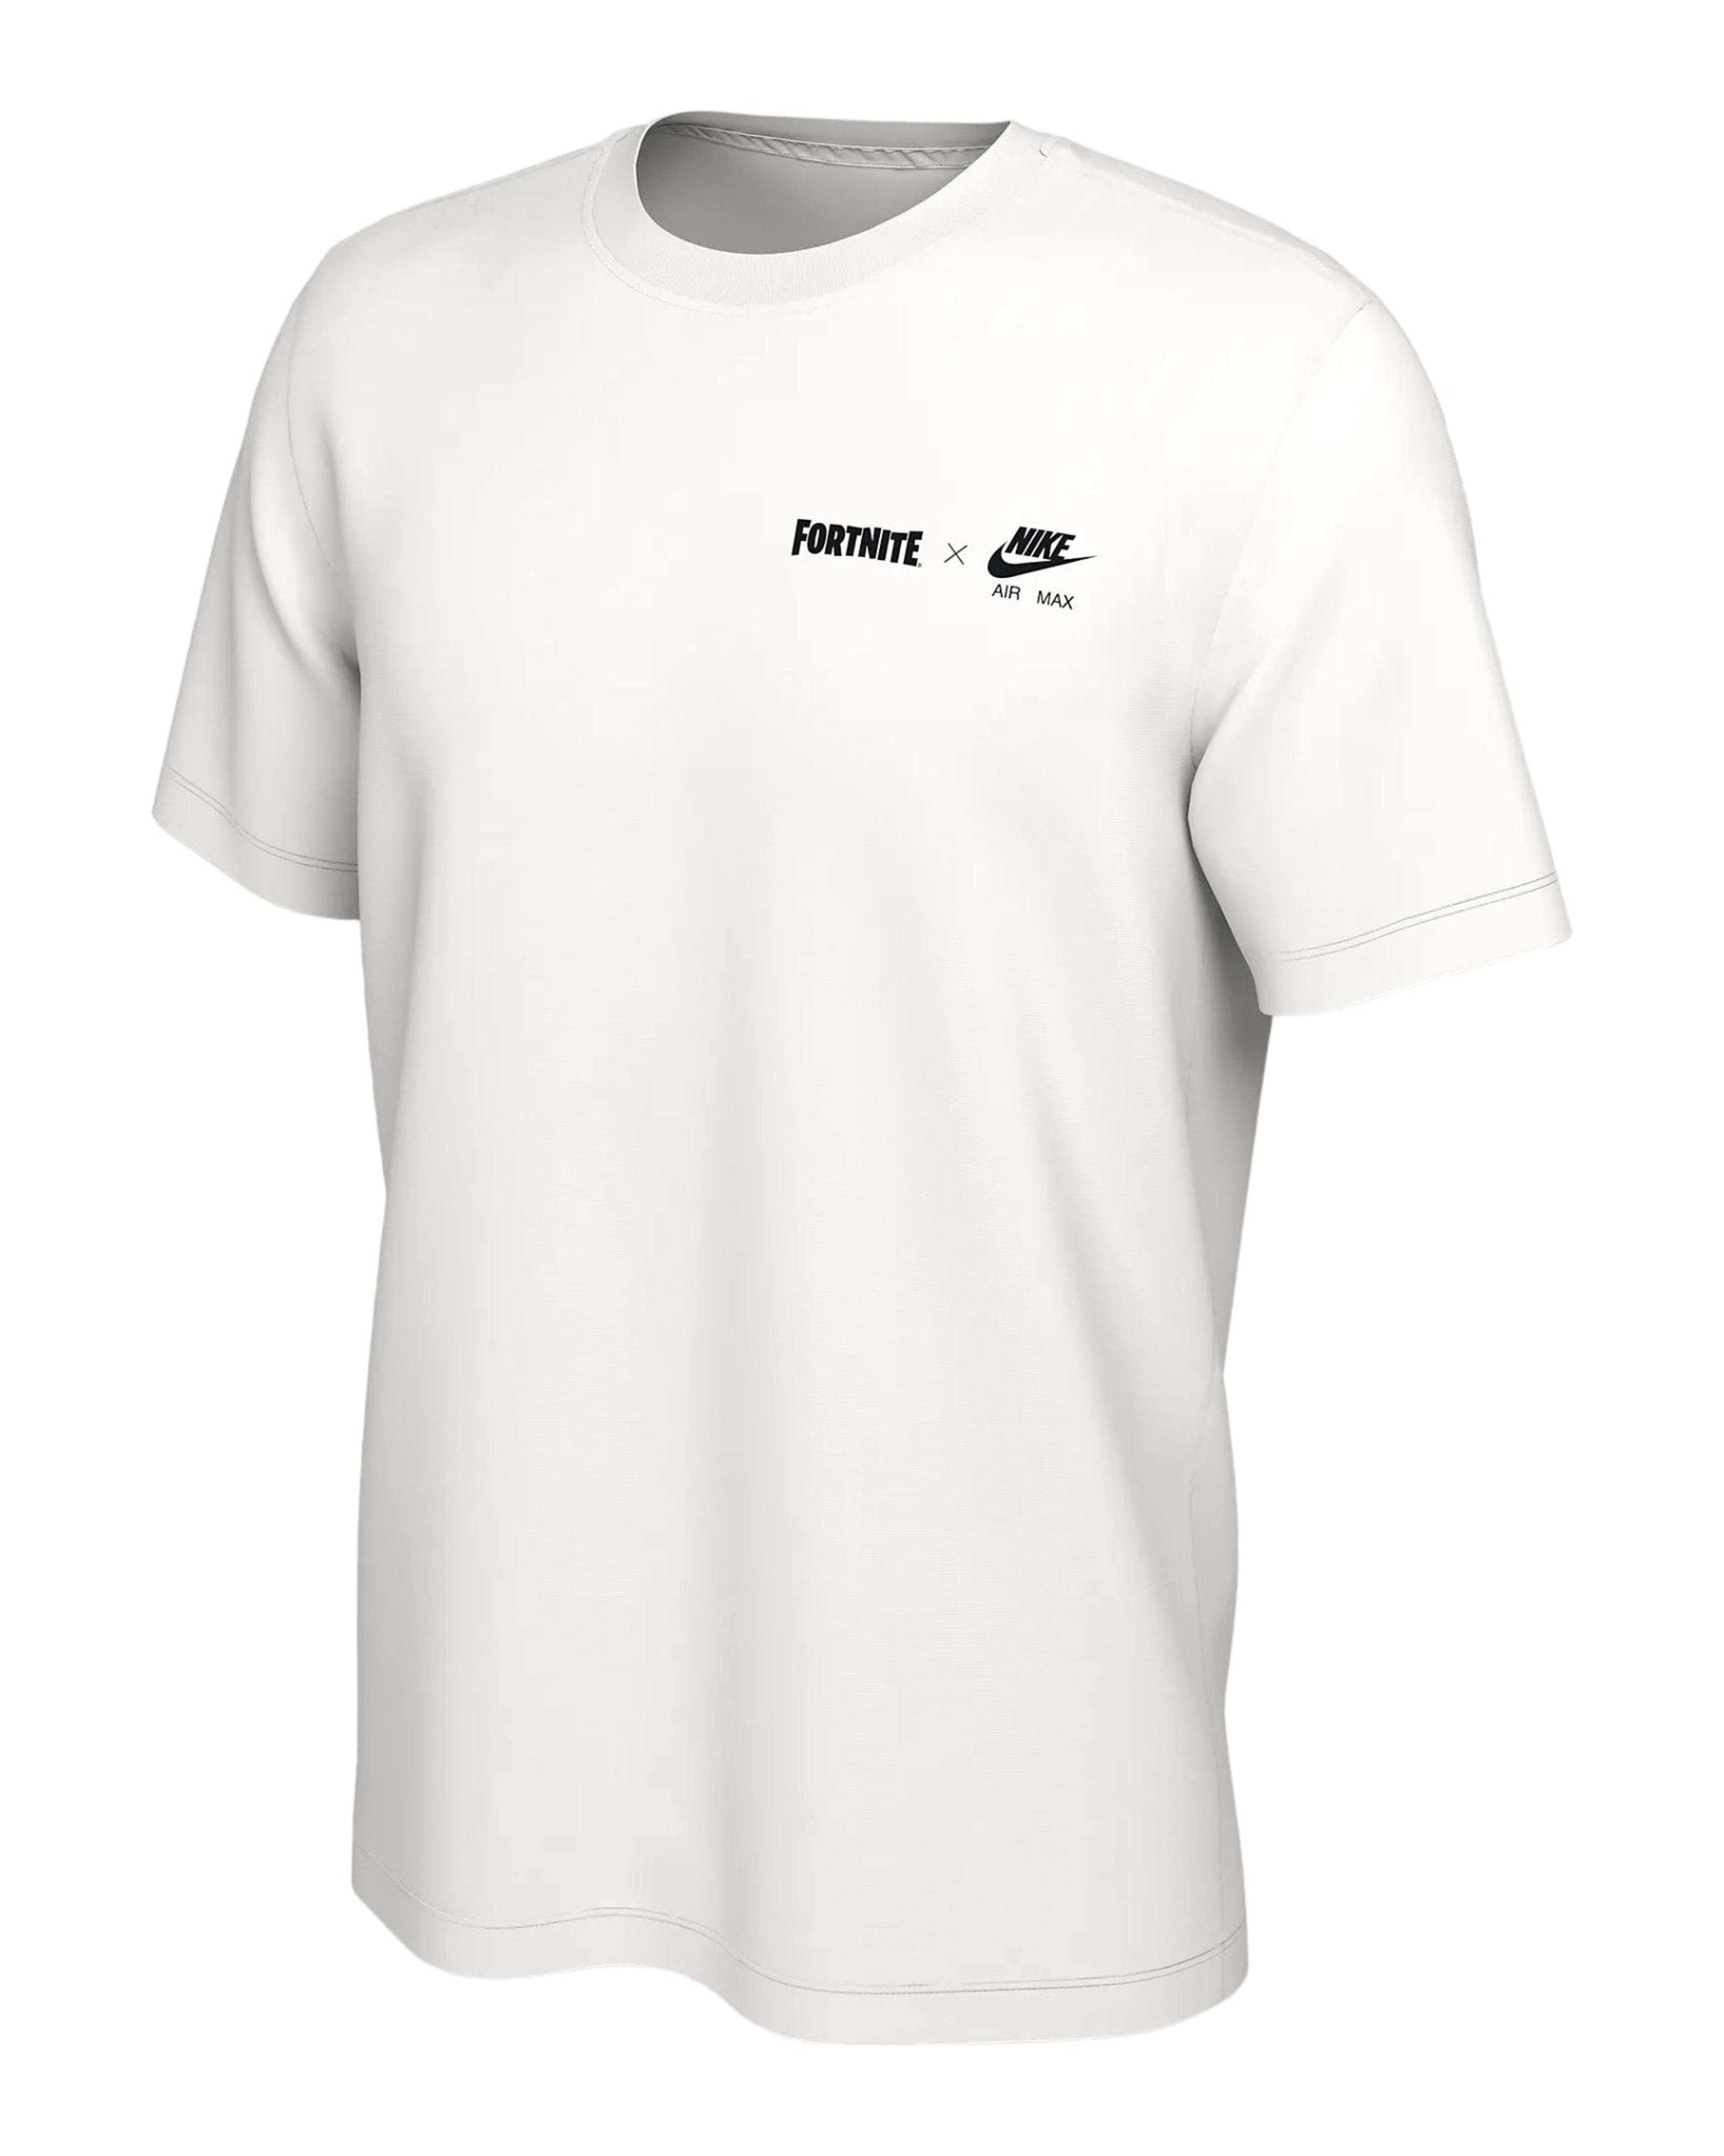 Fortnite x Nike Air Max Men's T-Shirt White